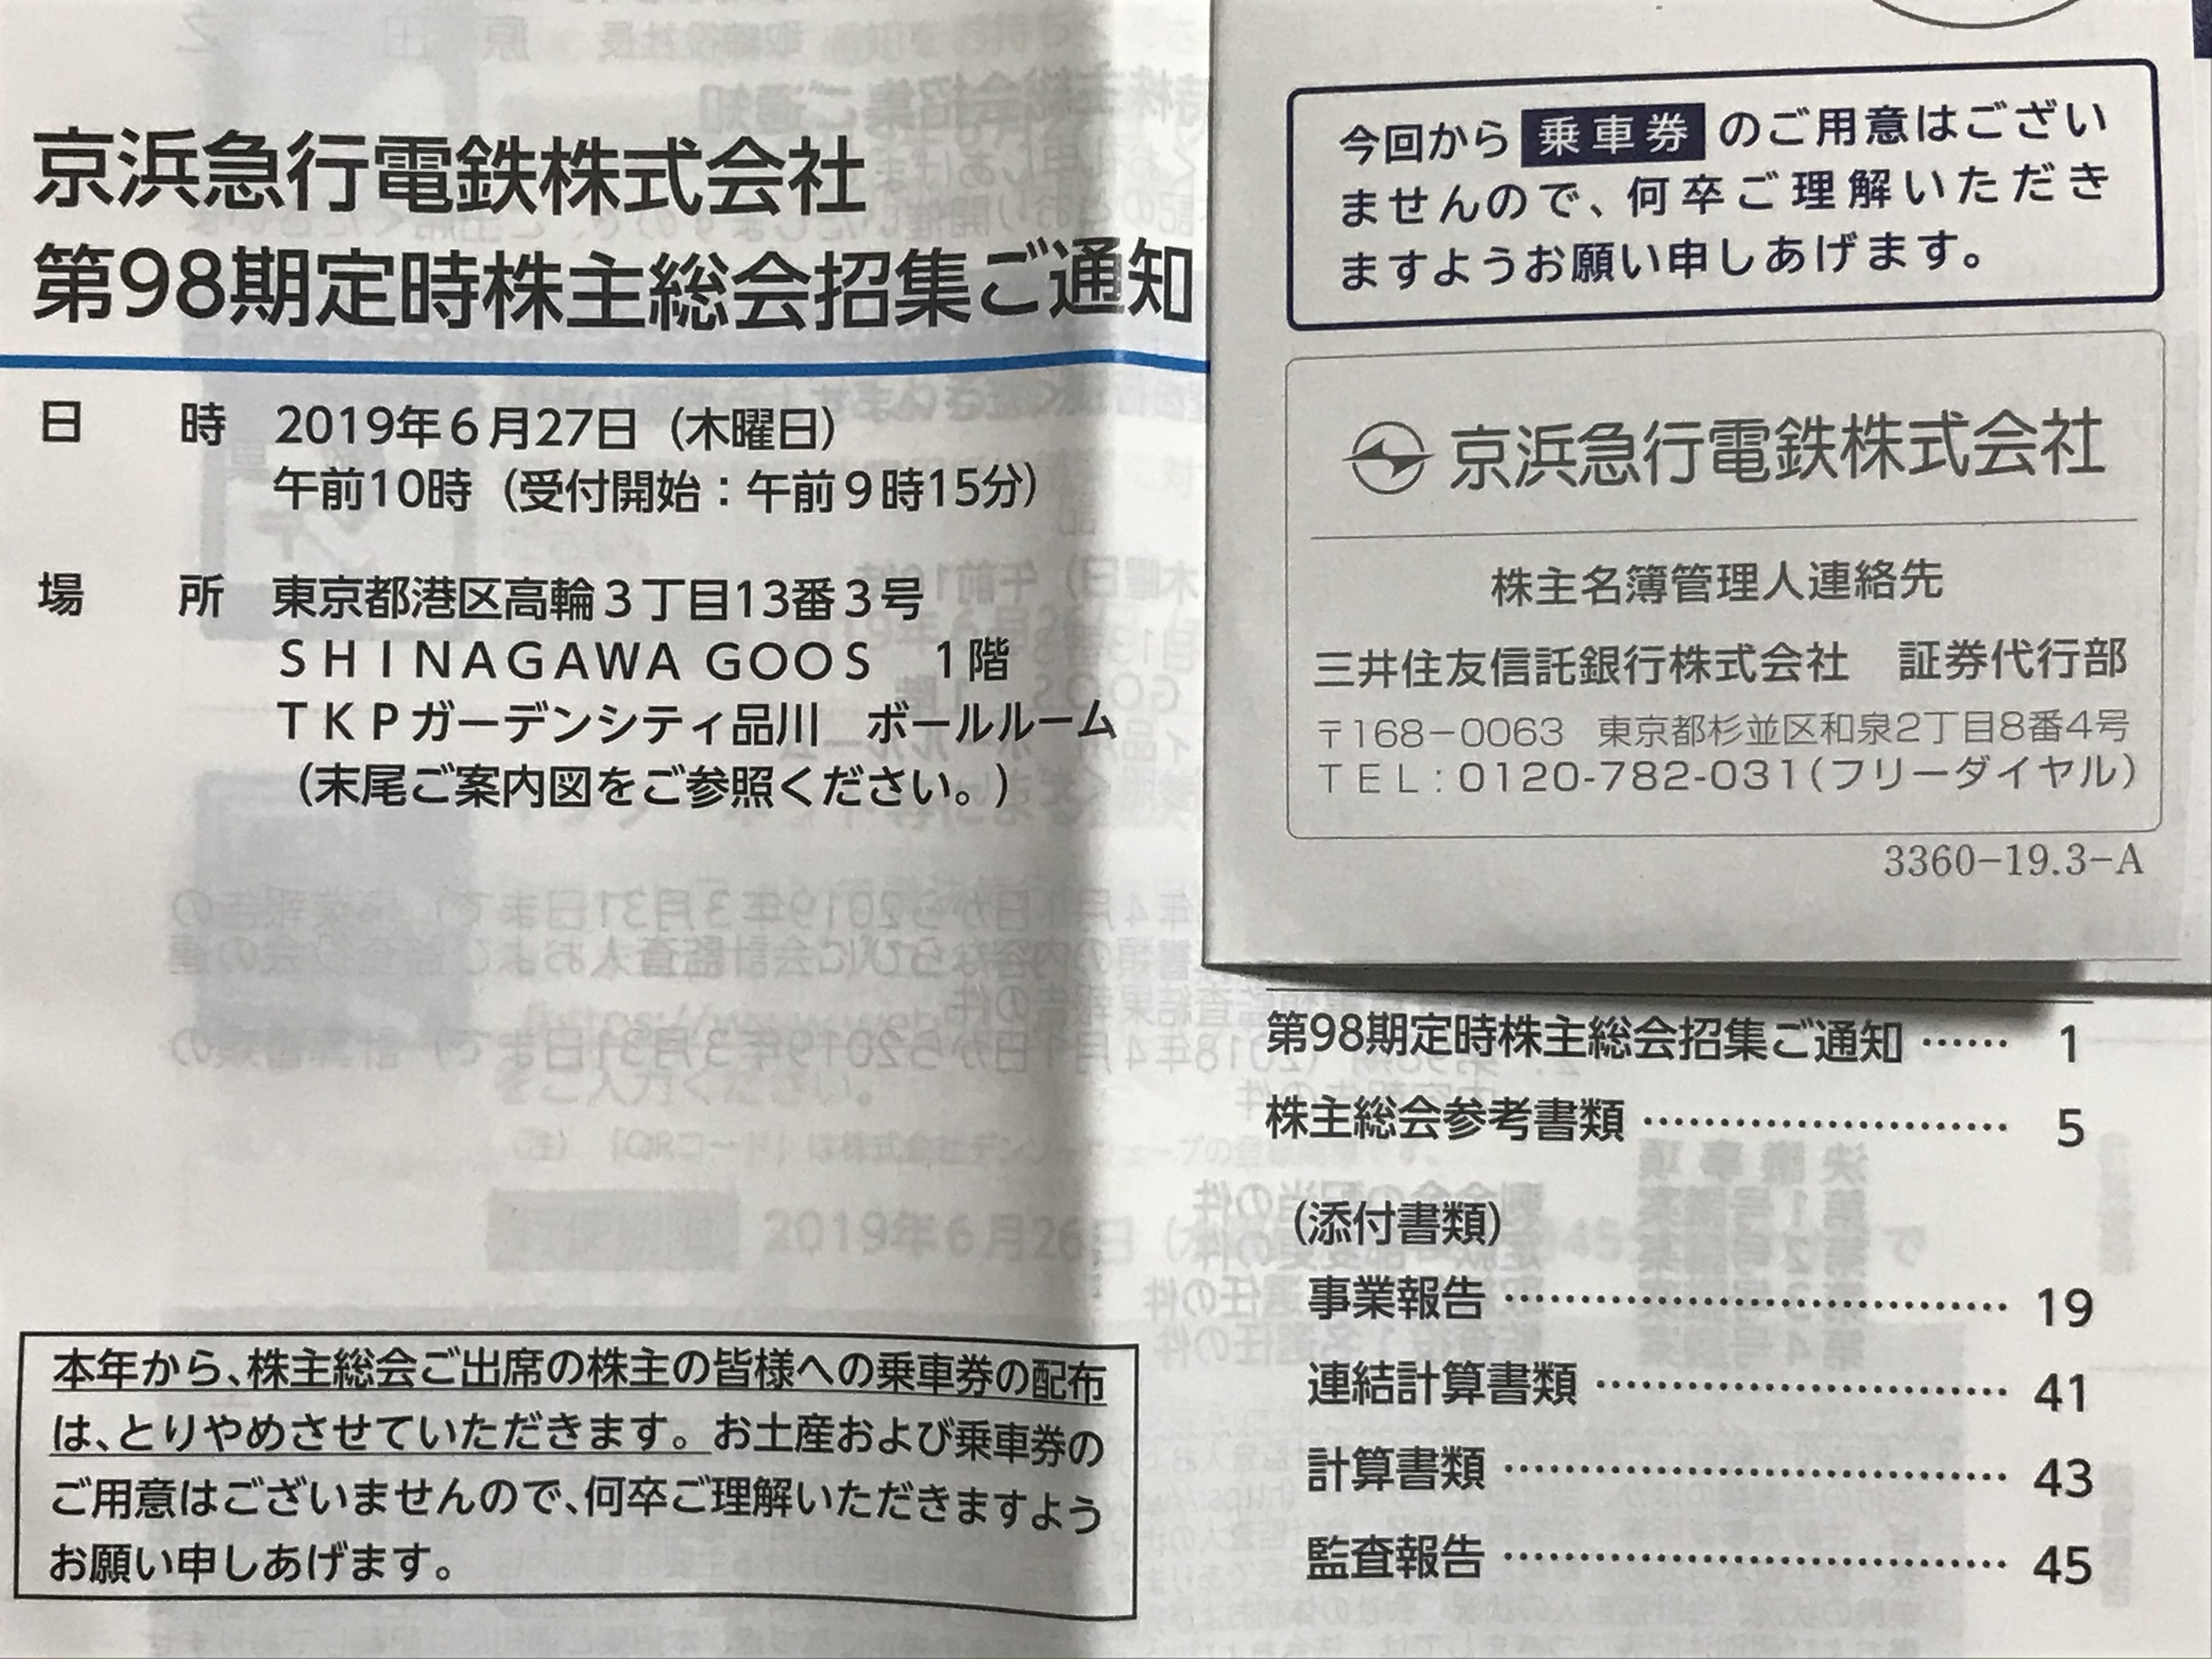 京浜急行電鉄の株主総会招集通知